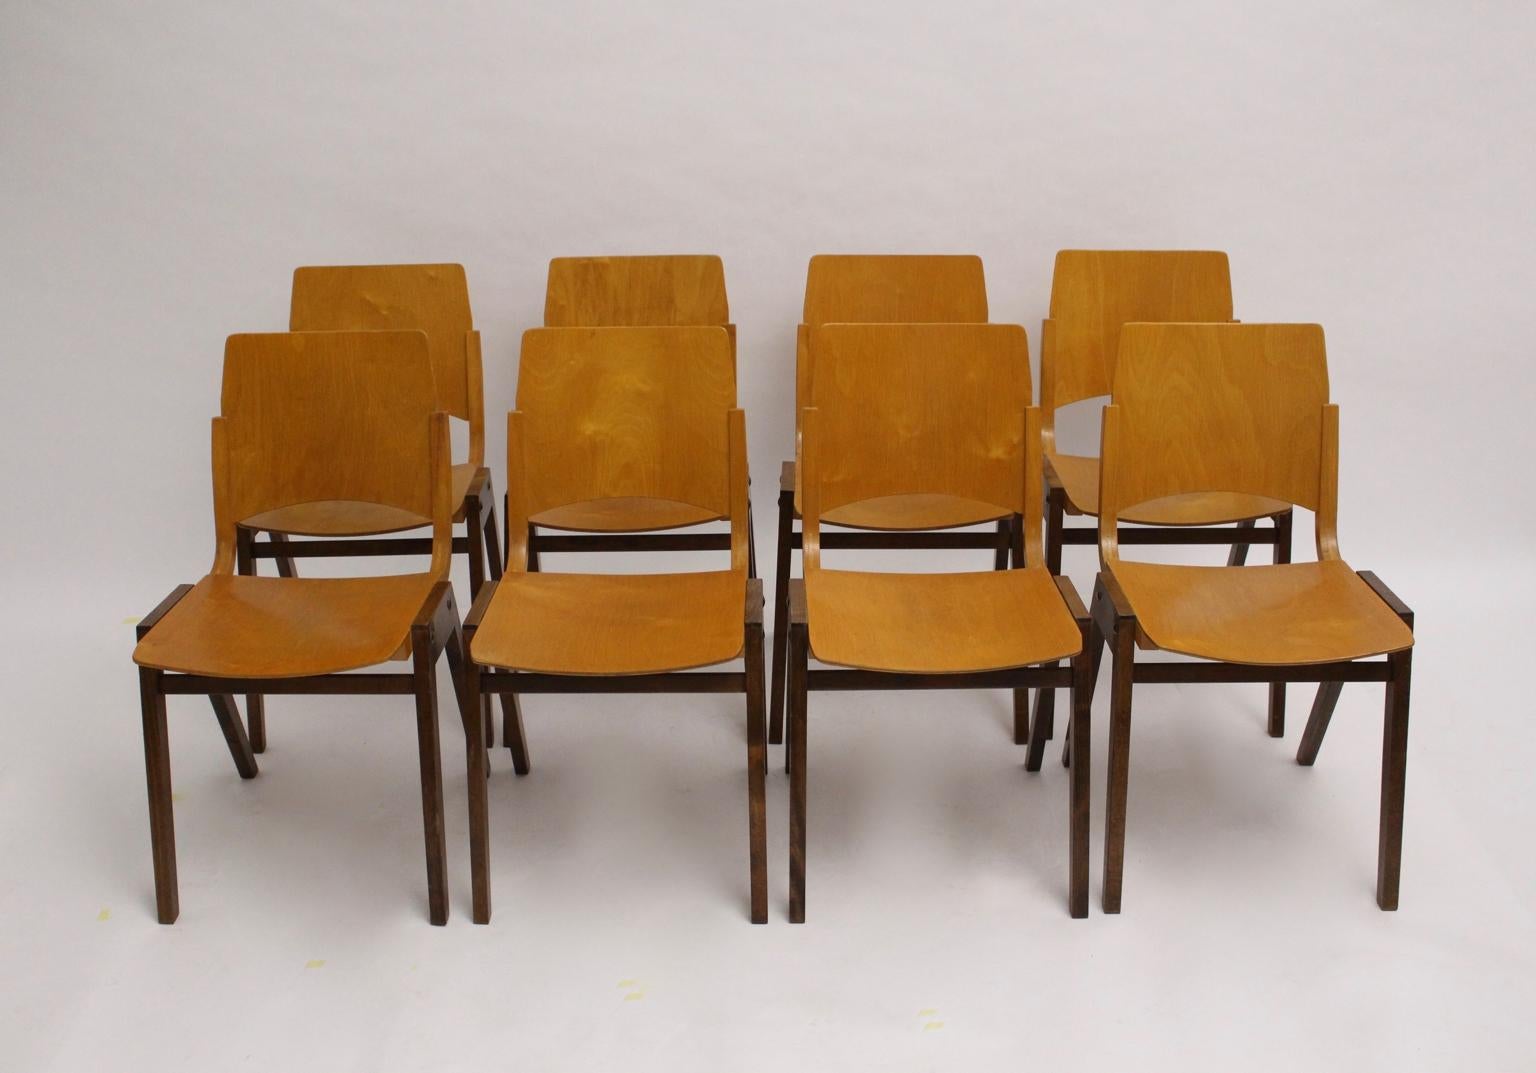 Ensemble intemporel de huit chaises de salle à manger vintage modèle P7 en hêtre conçu par Roland Rainer pour la Stadthalle de Vienne en 1952 et exécuté par Emil & Alfred Pollak Vienne.
Ces chaises ont été utilisées et conçues pour l'espace scénique